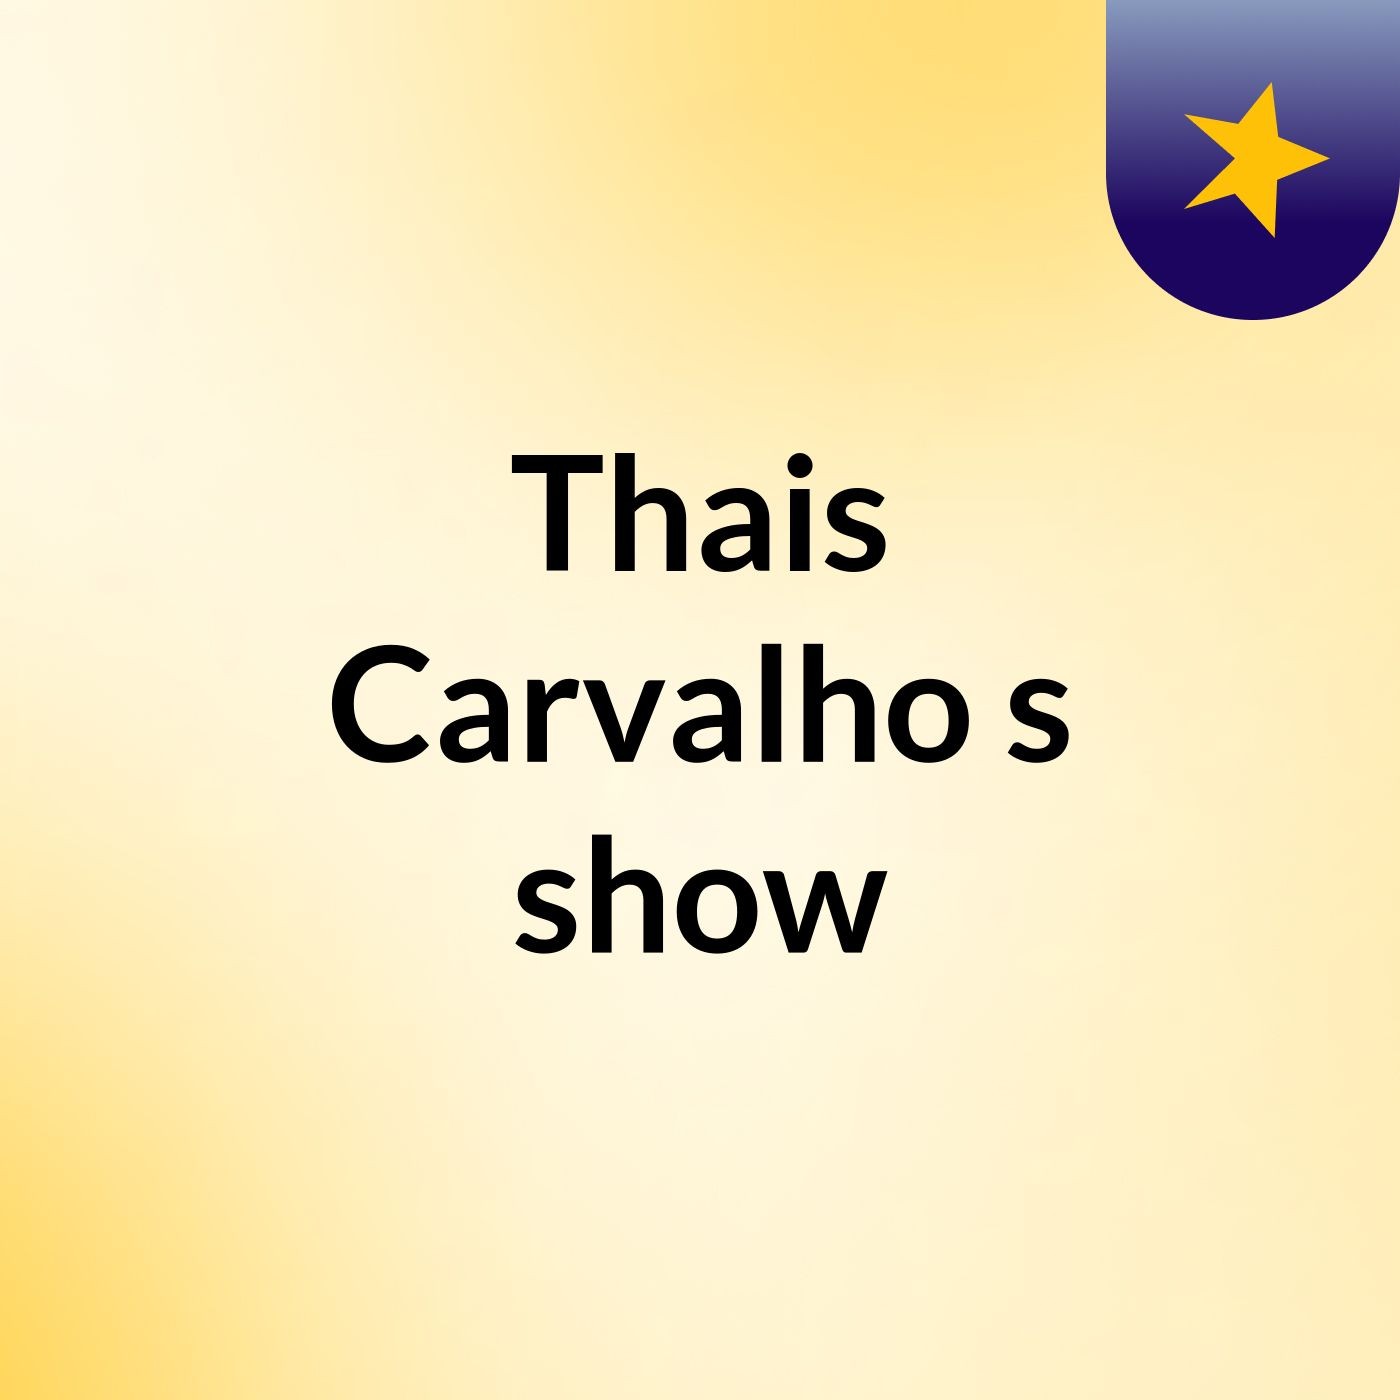 Thais Carvalho's show